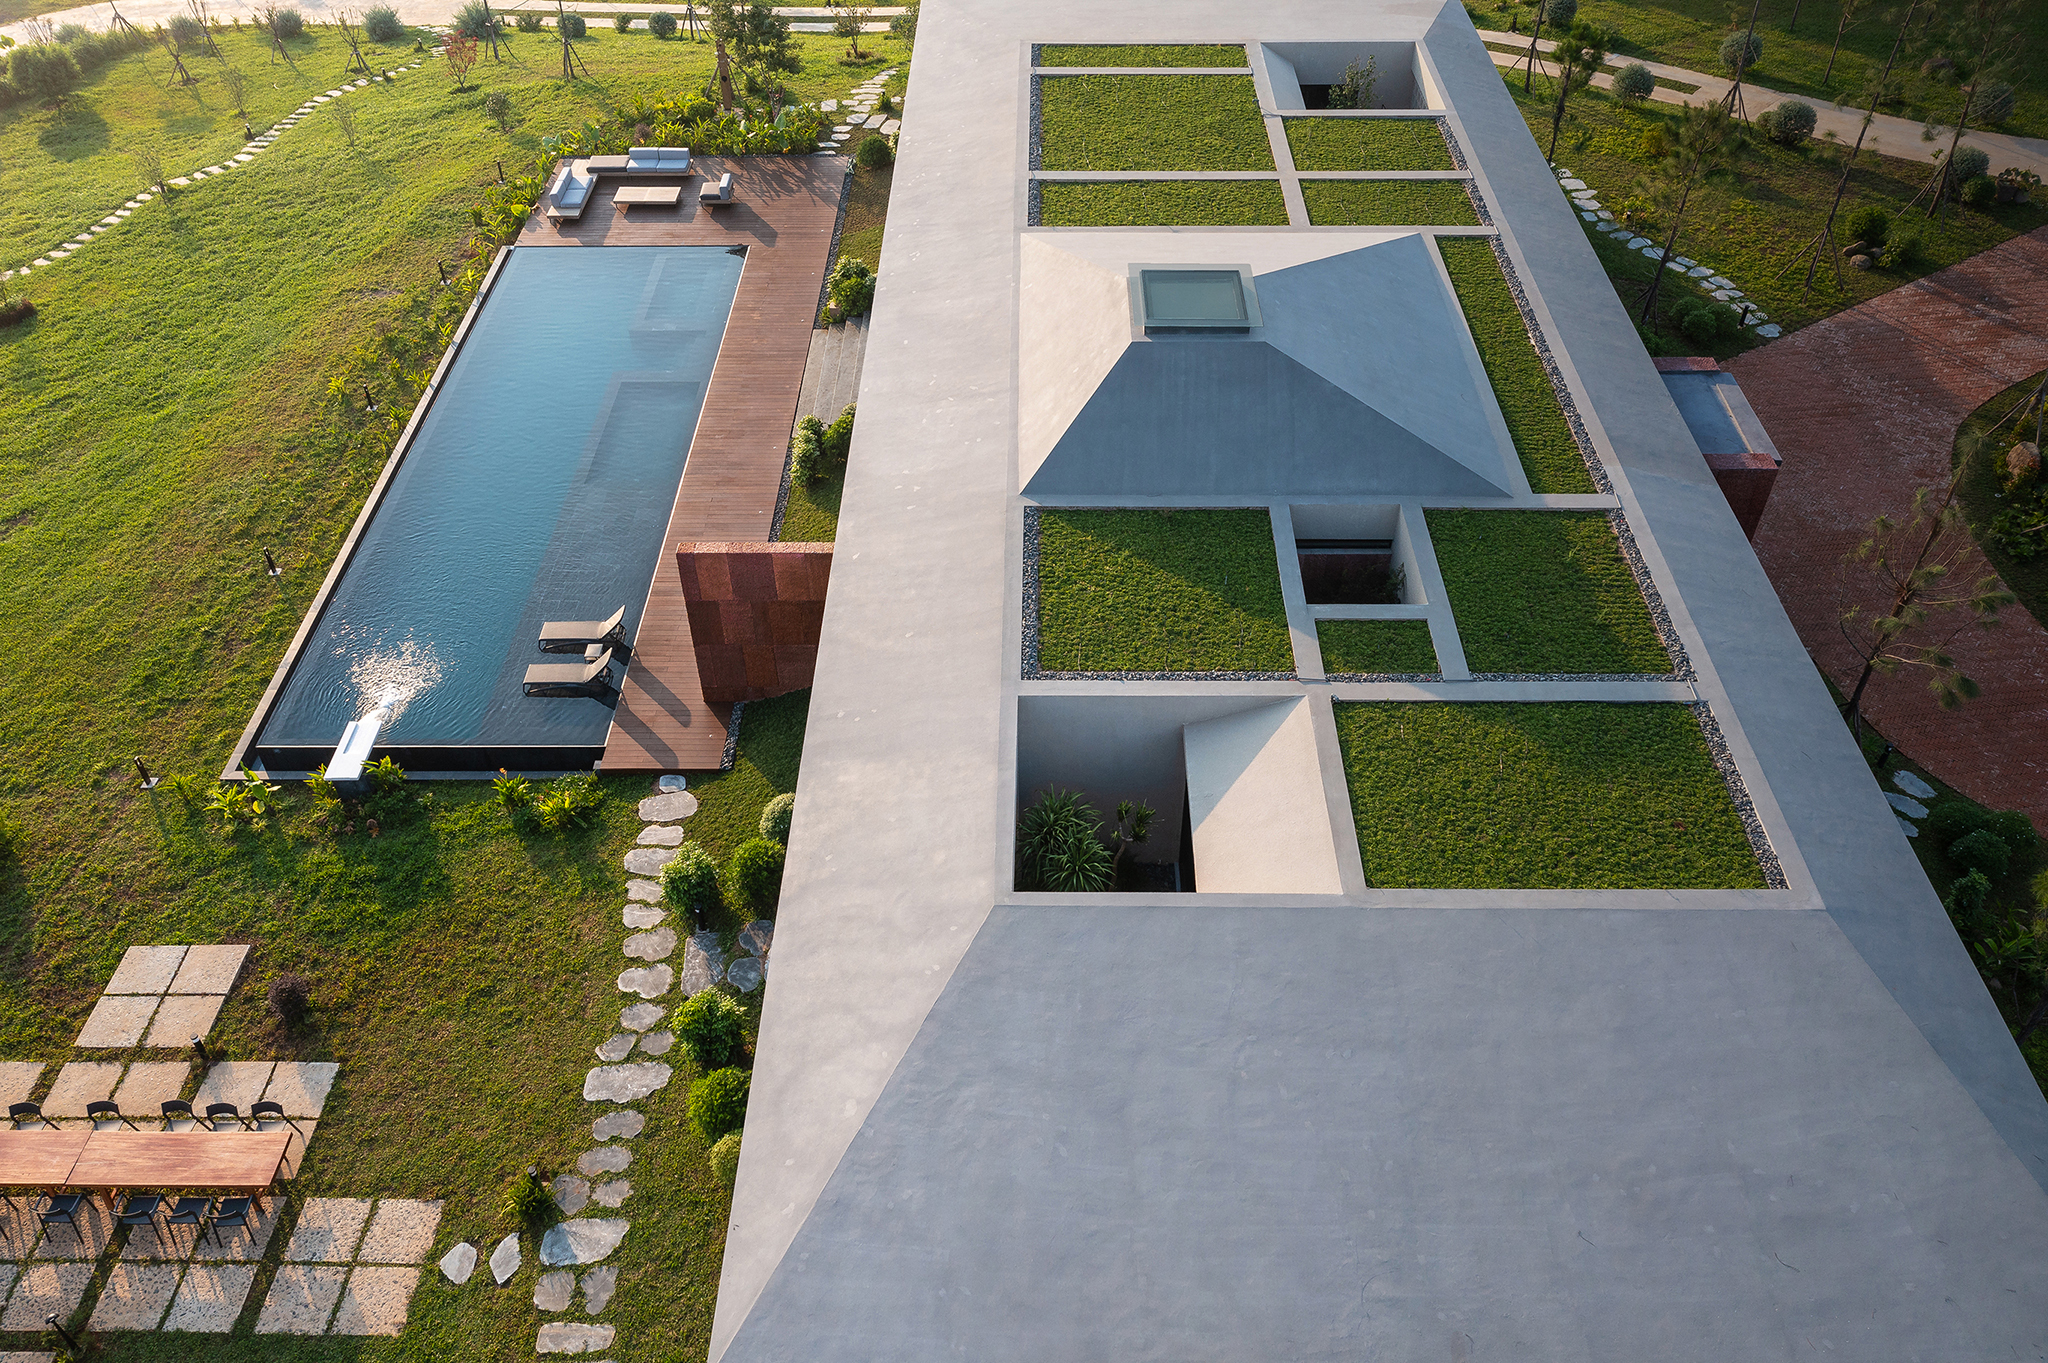 Mái nhà được trồng cỏ để tăng cảm giác hòa hợp với bối cảnh.